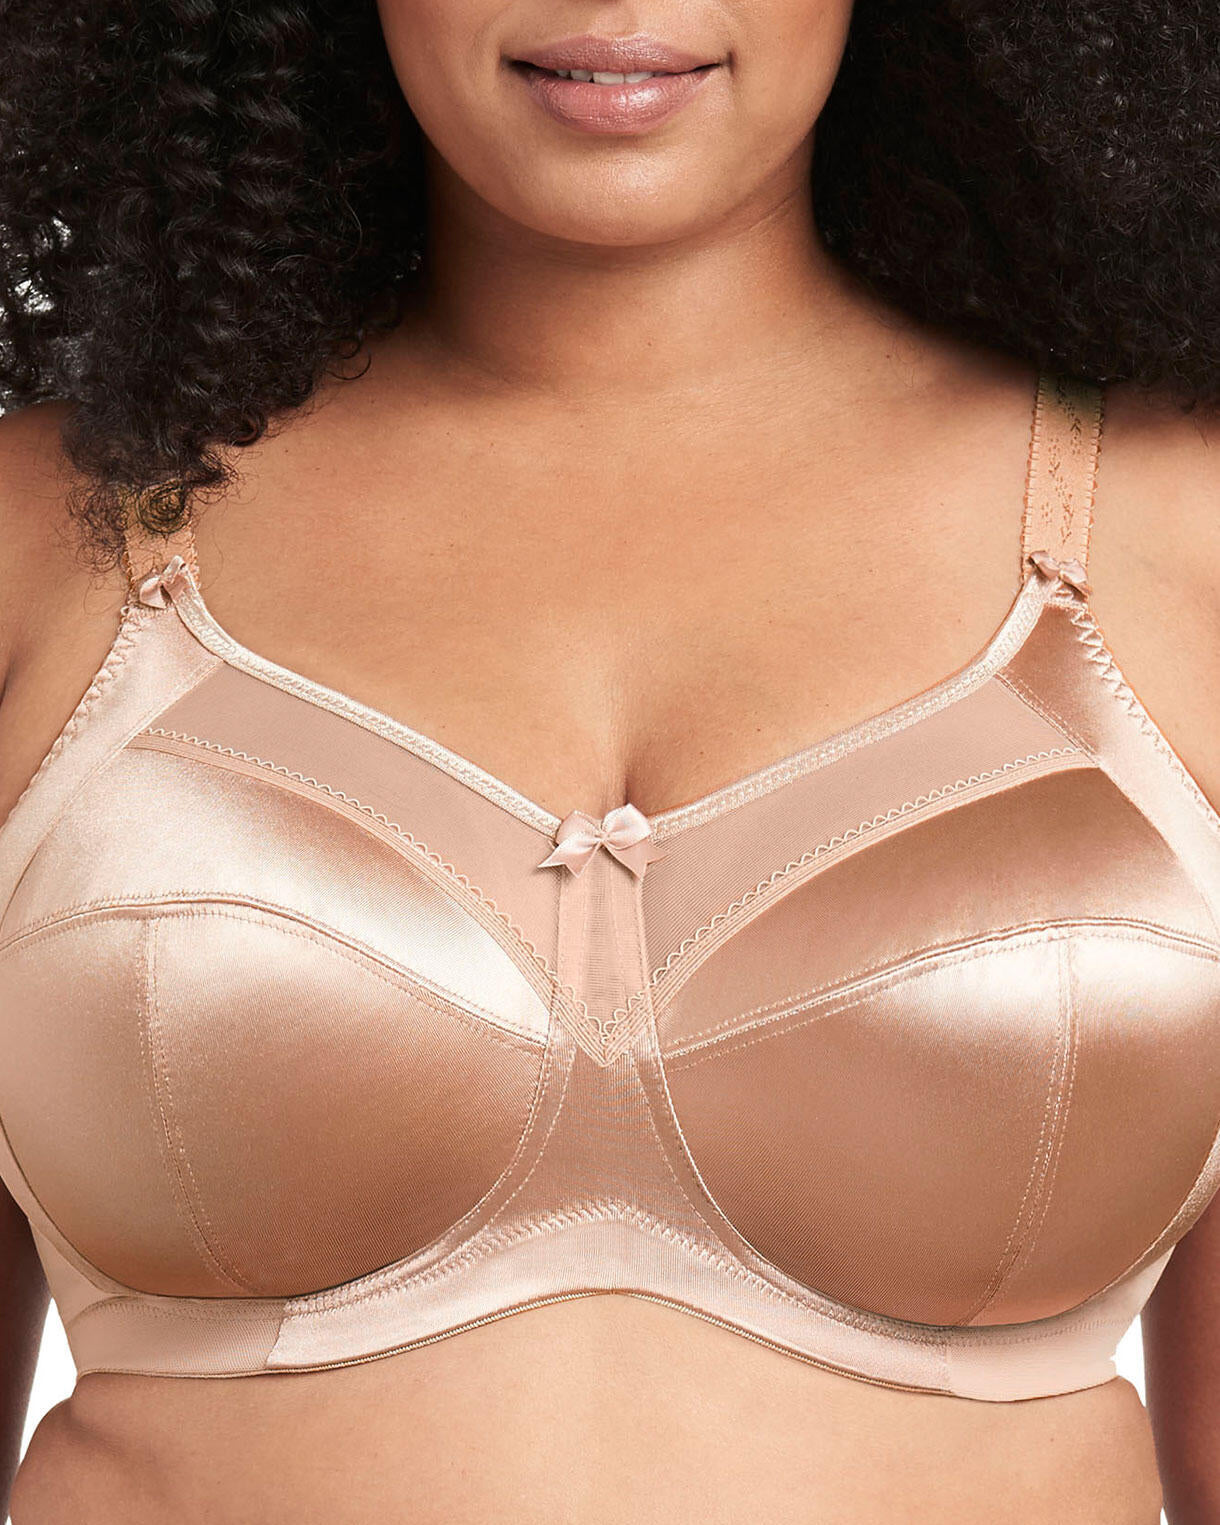 Model wearing a soft cup wire free bra in light beige